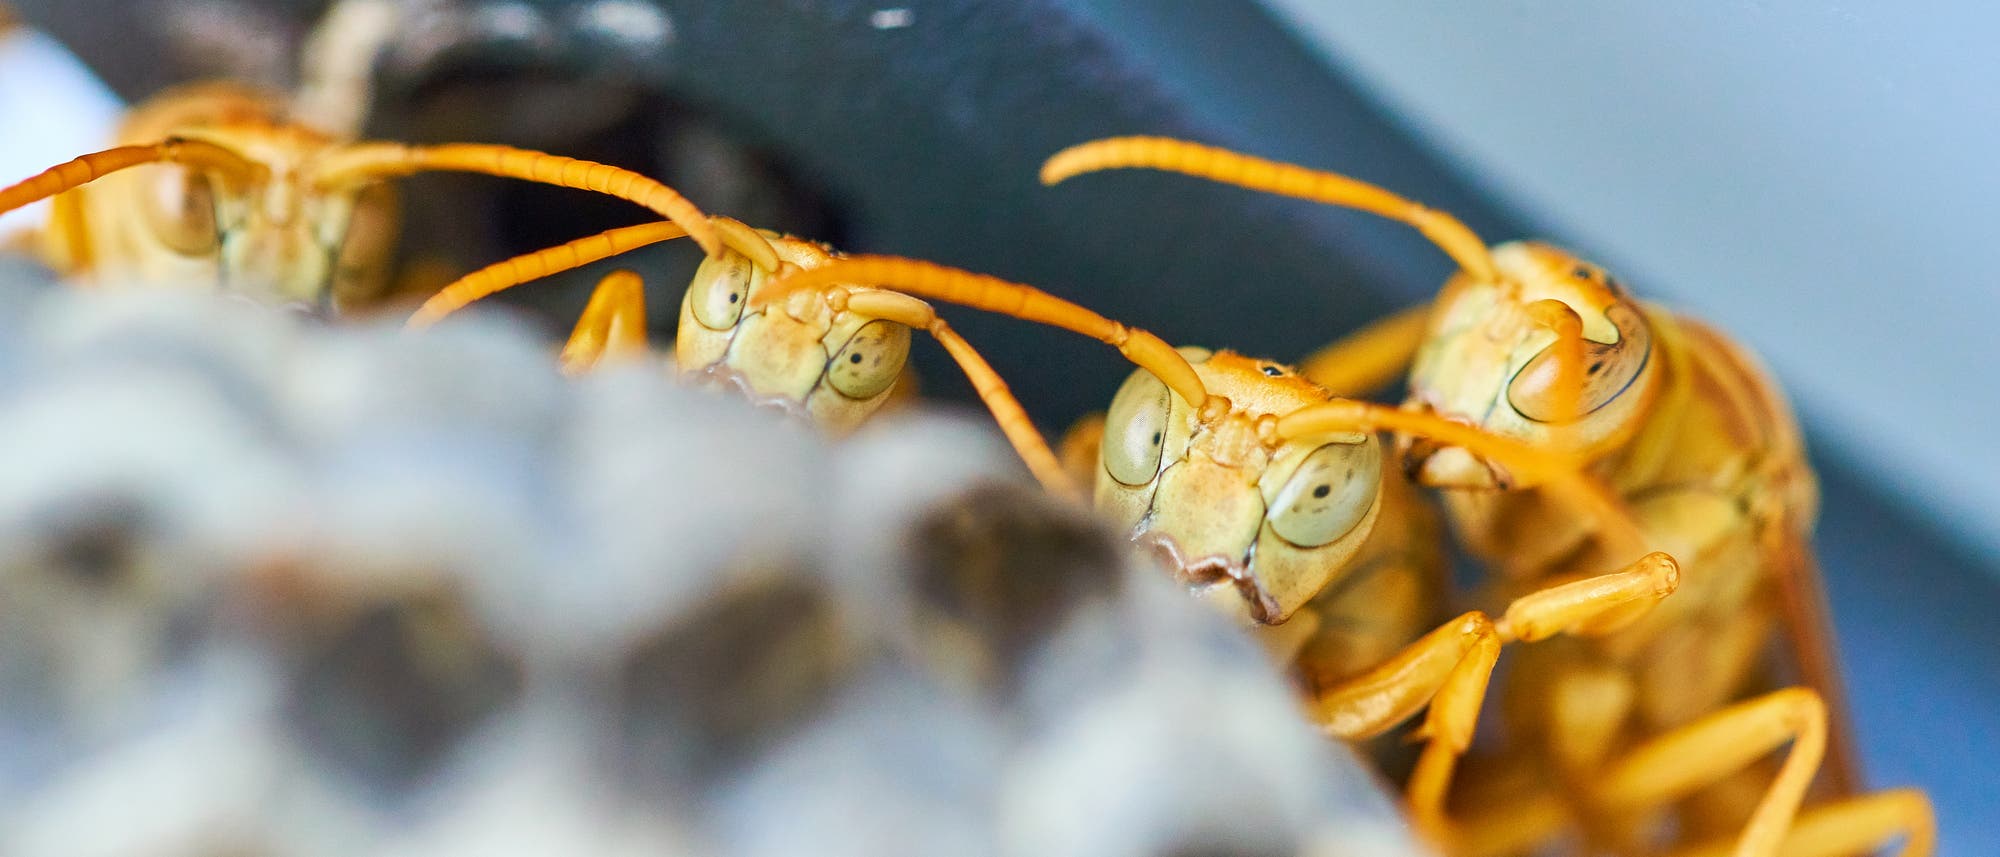 Mehrere gelbe Wespen gucken über den Rand ihres Nests